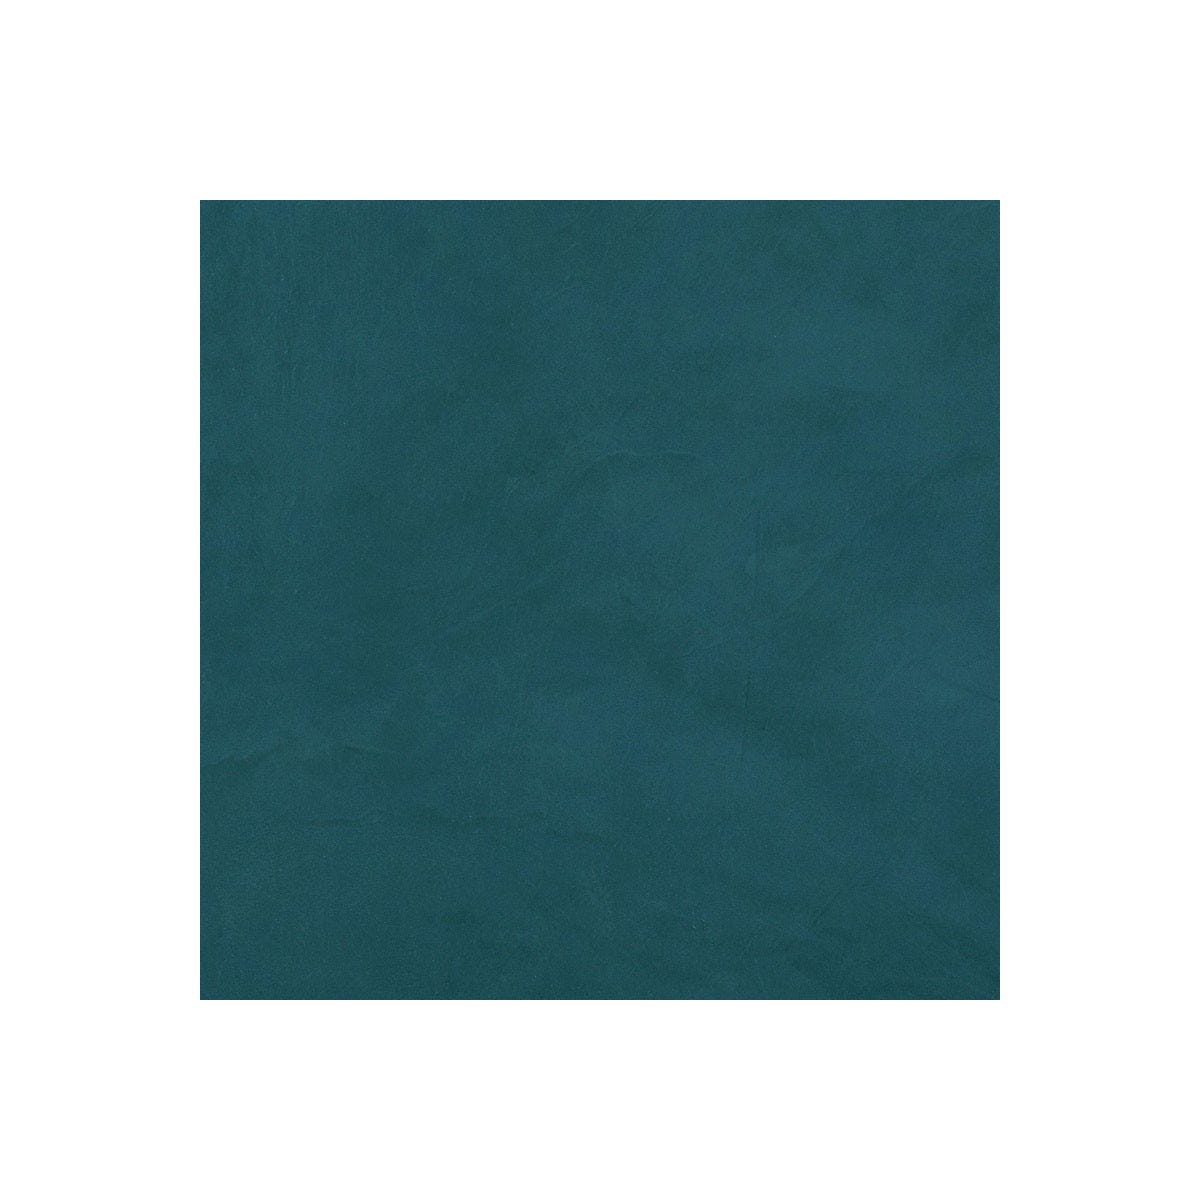 BETON CIRE CARRELAGE POUR SOLS ET MURS - KIT BETON CIRE SUR CARRELAGE - 2 m² (en 2 couches) - Turquin Bleu - ARCANE INDUSTRIES 1